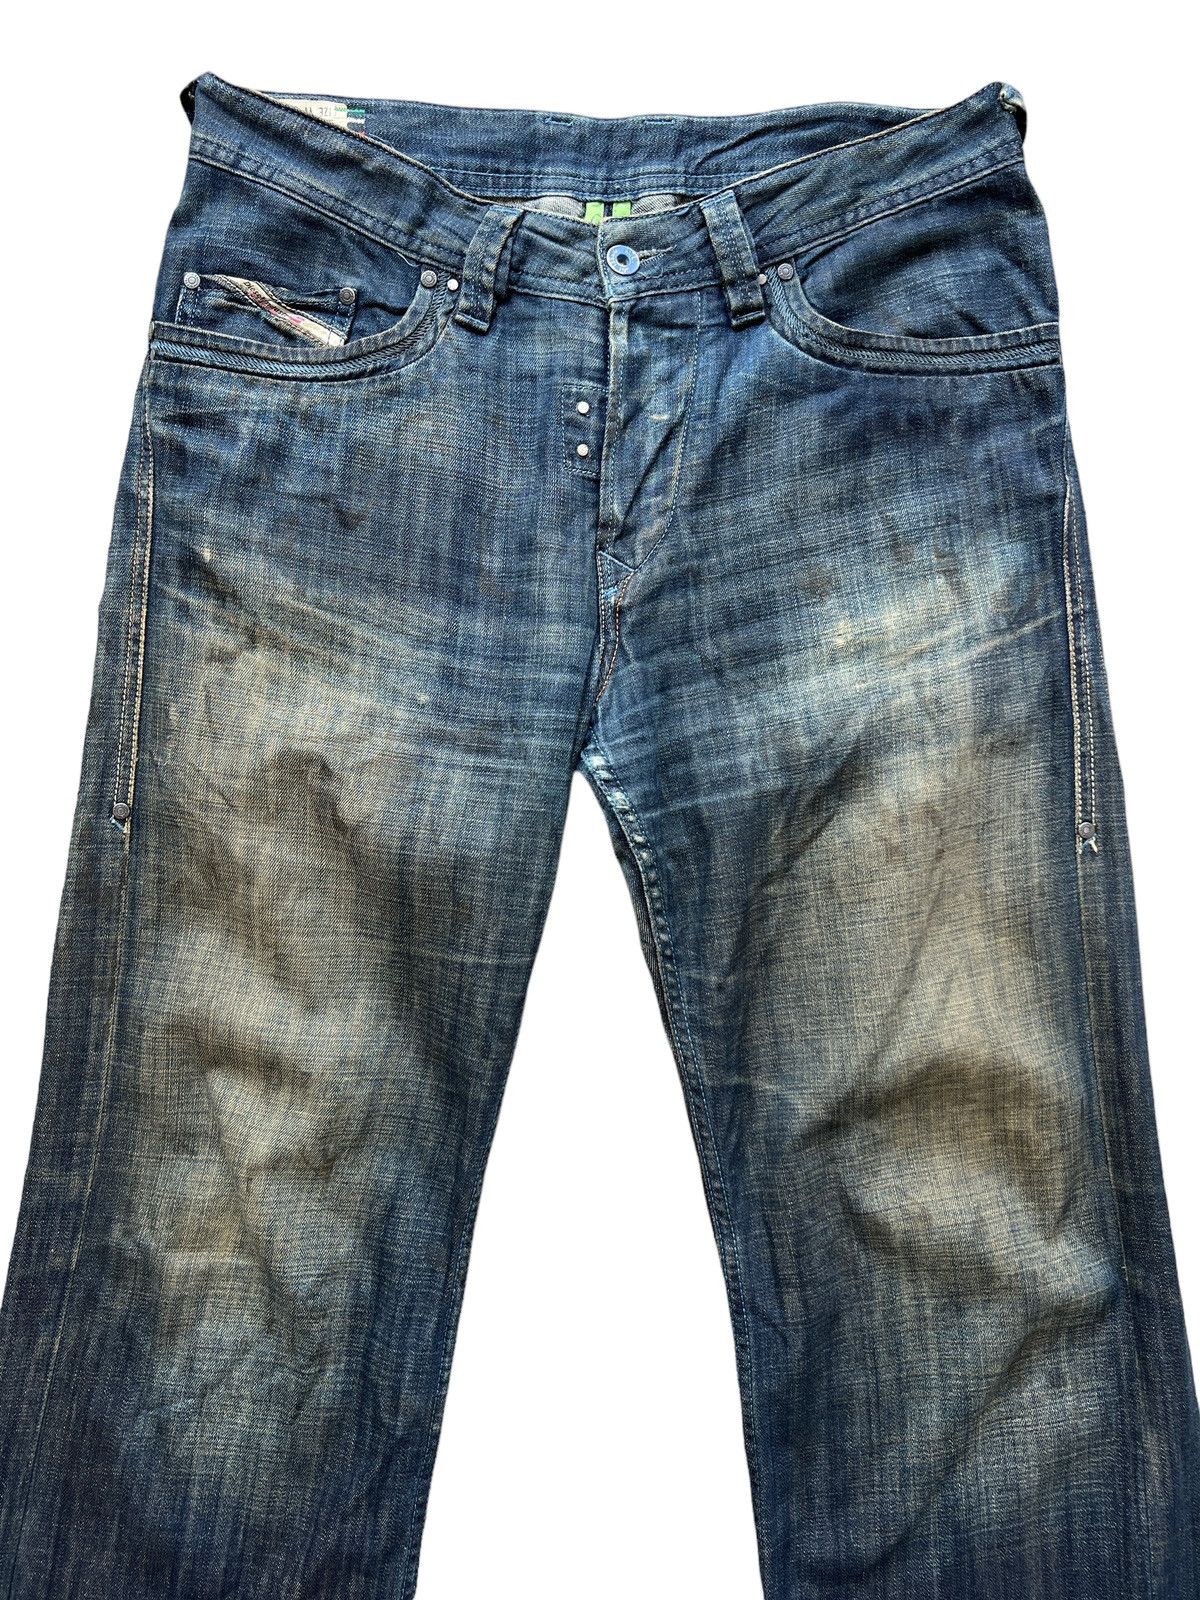 Vintage Diesel Industry Distressed Denim Jeans 34x30 - 4